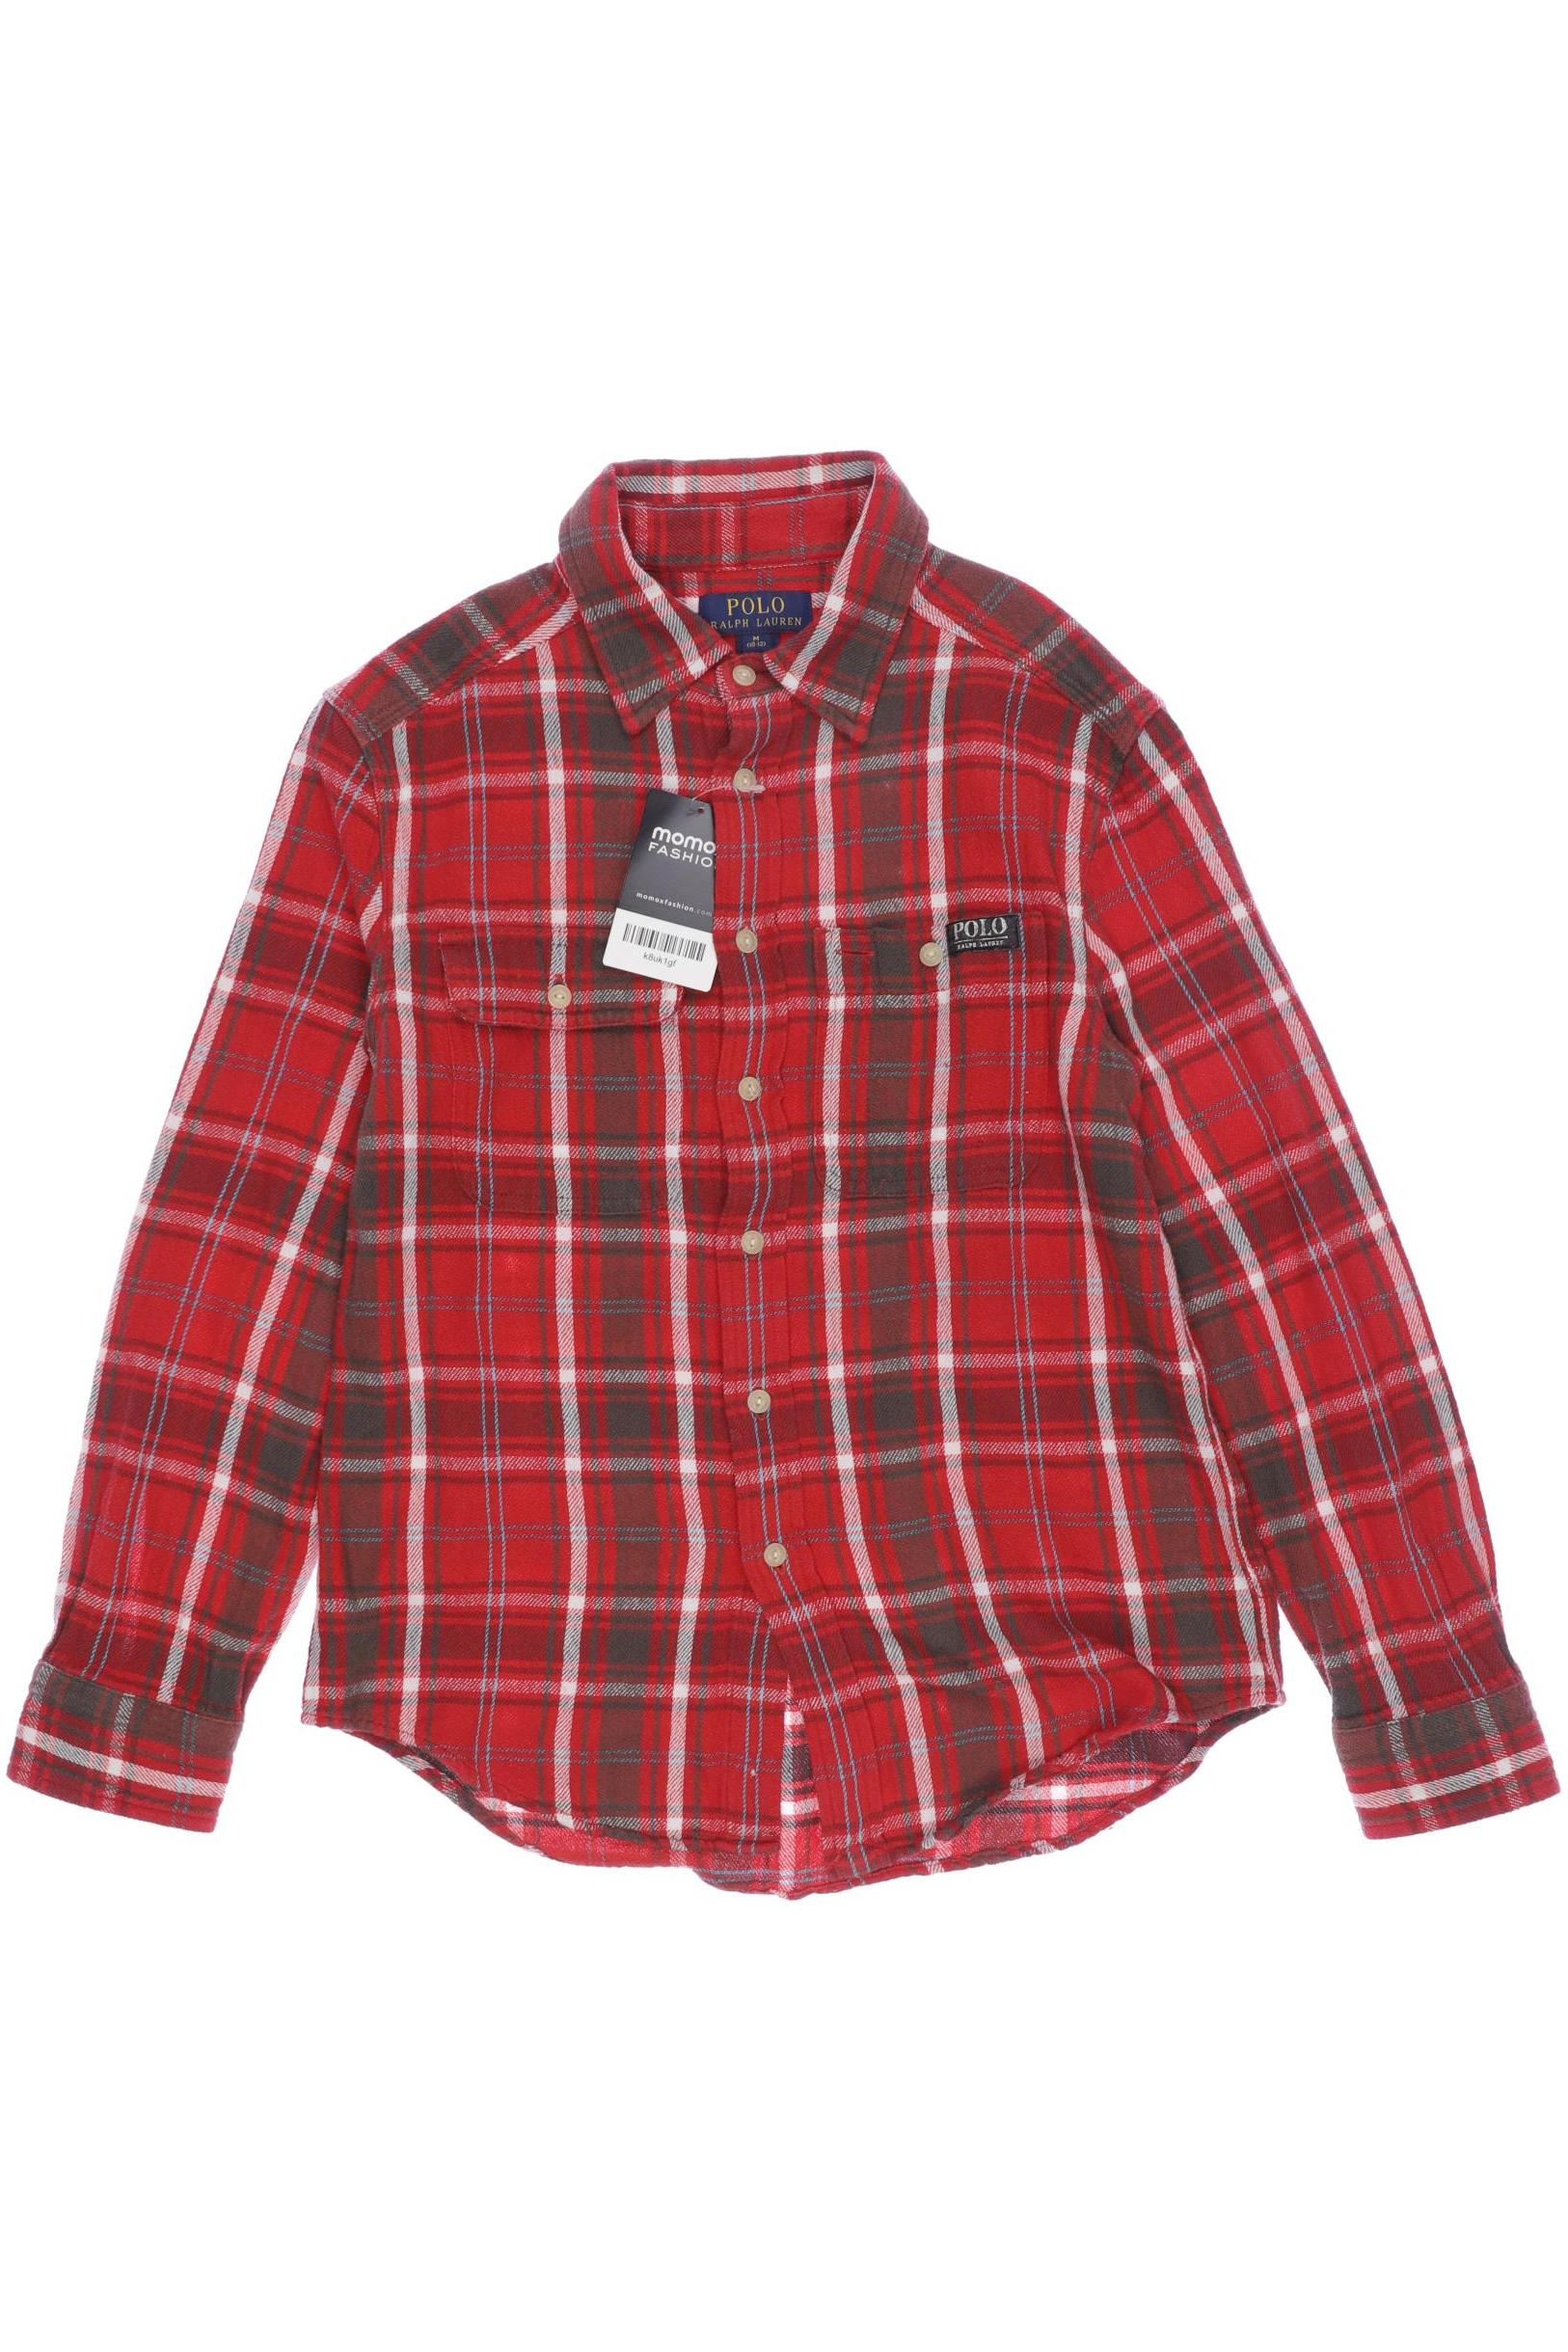 Polo Ralph Lauren Jungen Hemd, rot von Polo Ralph Lauren